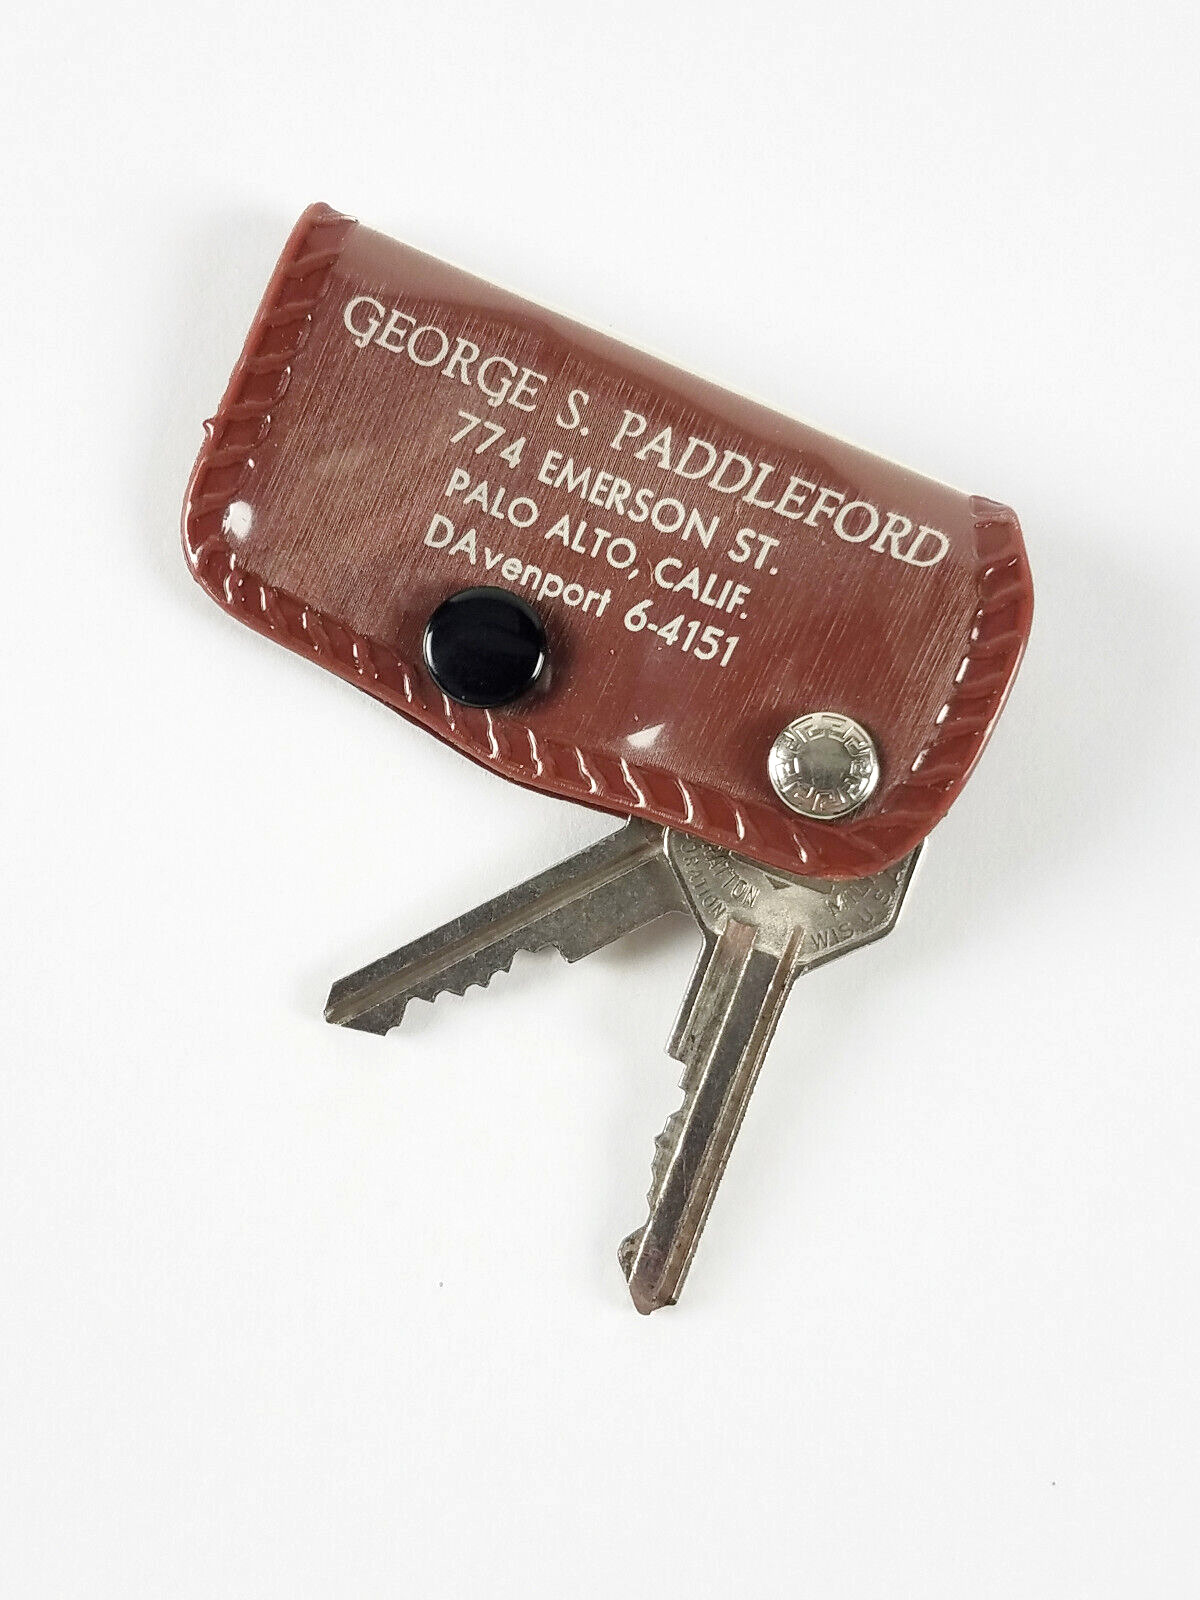 Vtg 1950s George Paddleford OLDS CADILLAC Car Dealer Key Holder PALO ALTO CA Brn